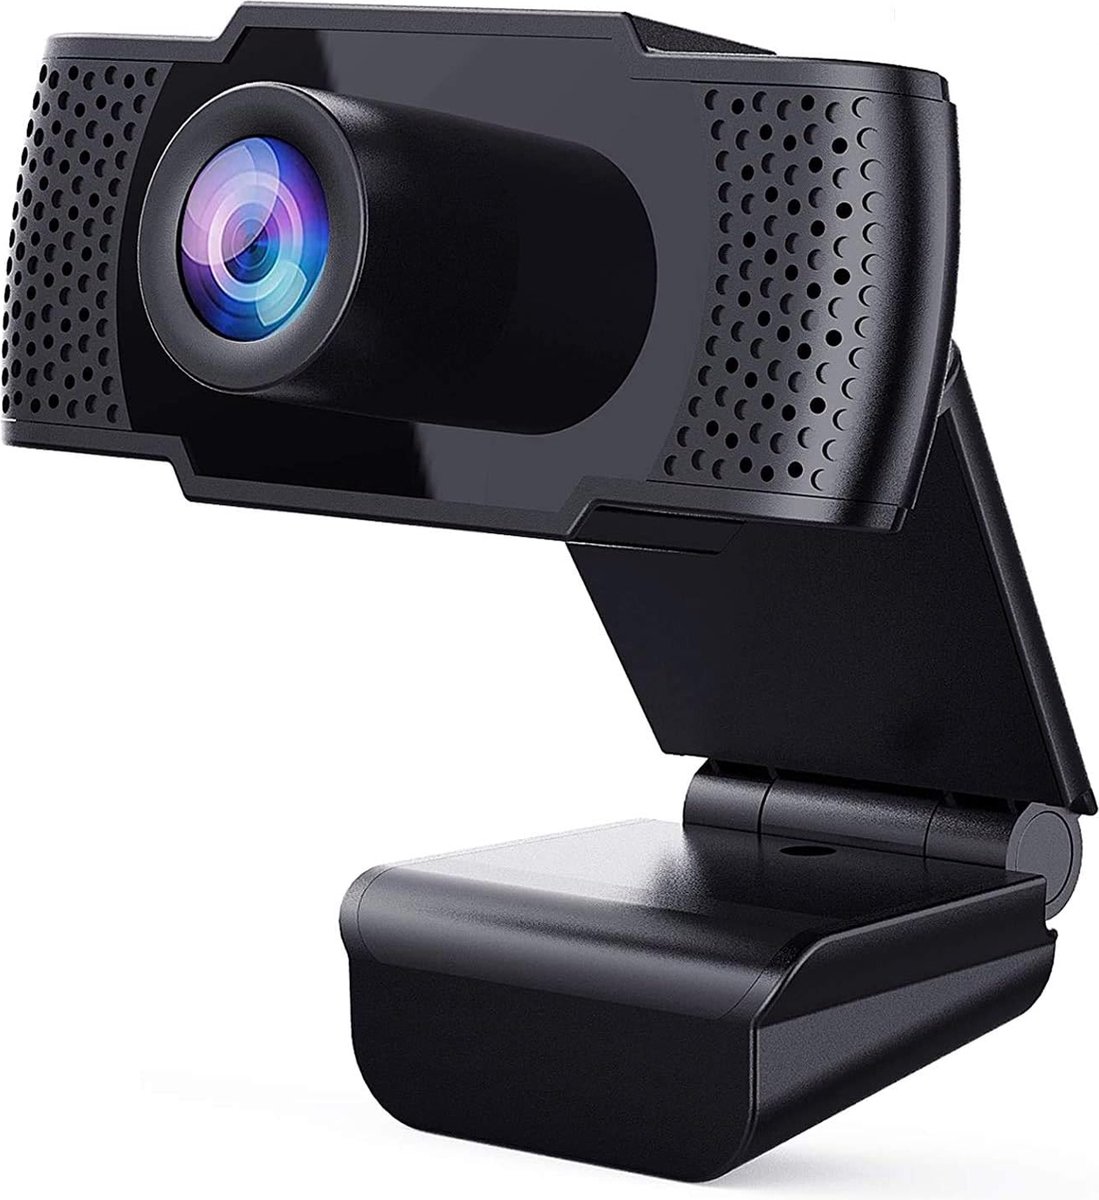 Webcam met microfoon - Volledige 1080P HD PC-webcam Draagbaar - Computer Camera - Plug-and-Play-webcam voor online vergaderen Gaming Live streaming Laptop Desktop USB 2.0 Webcamera